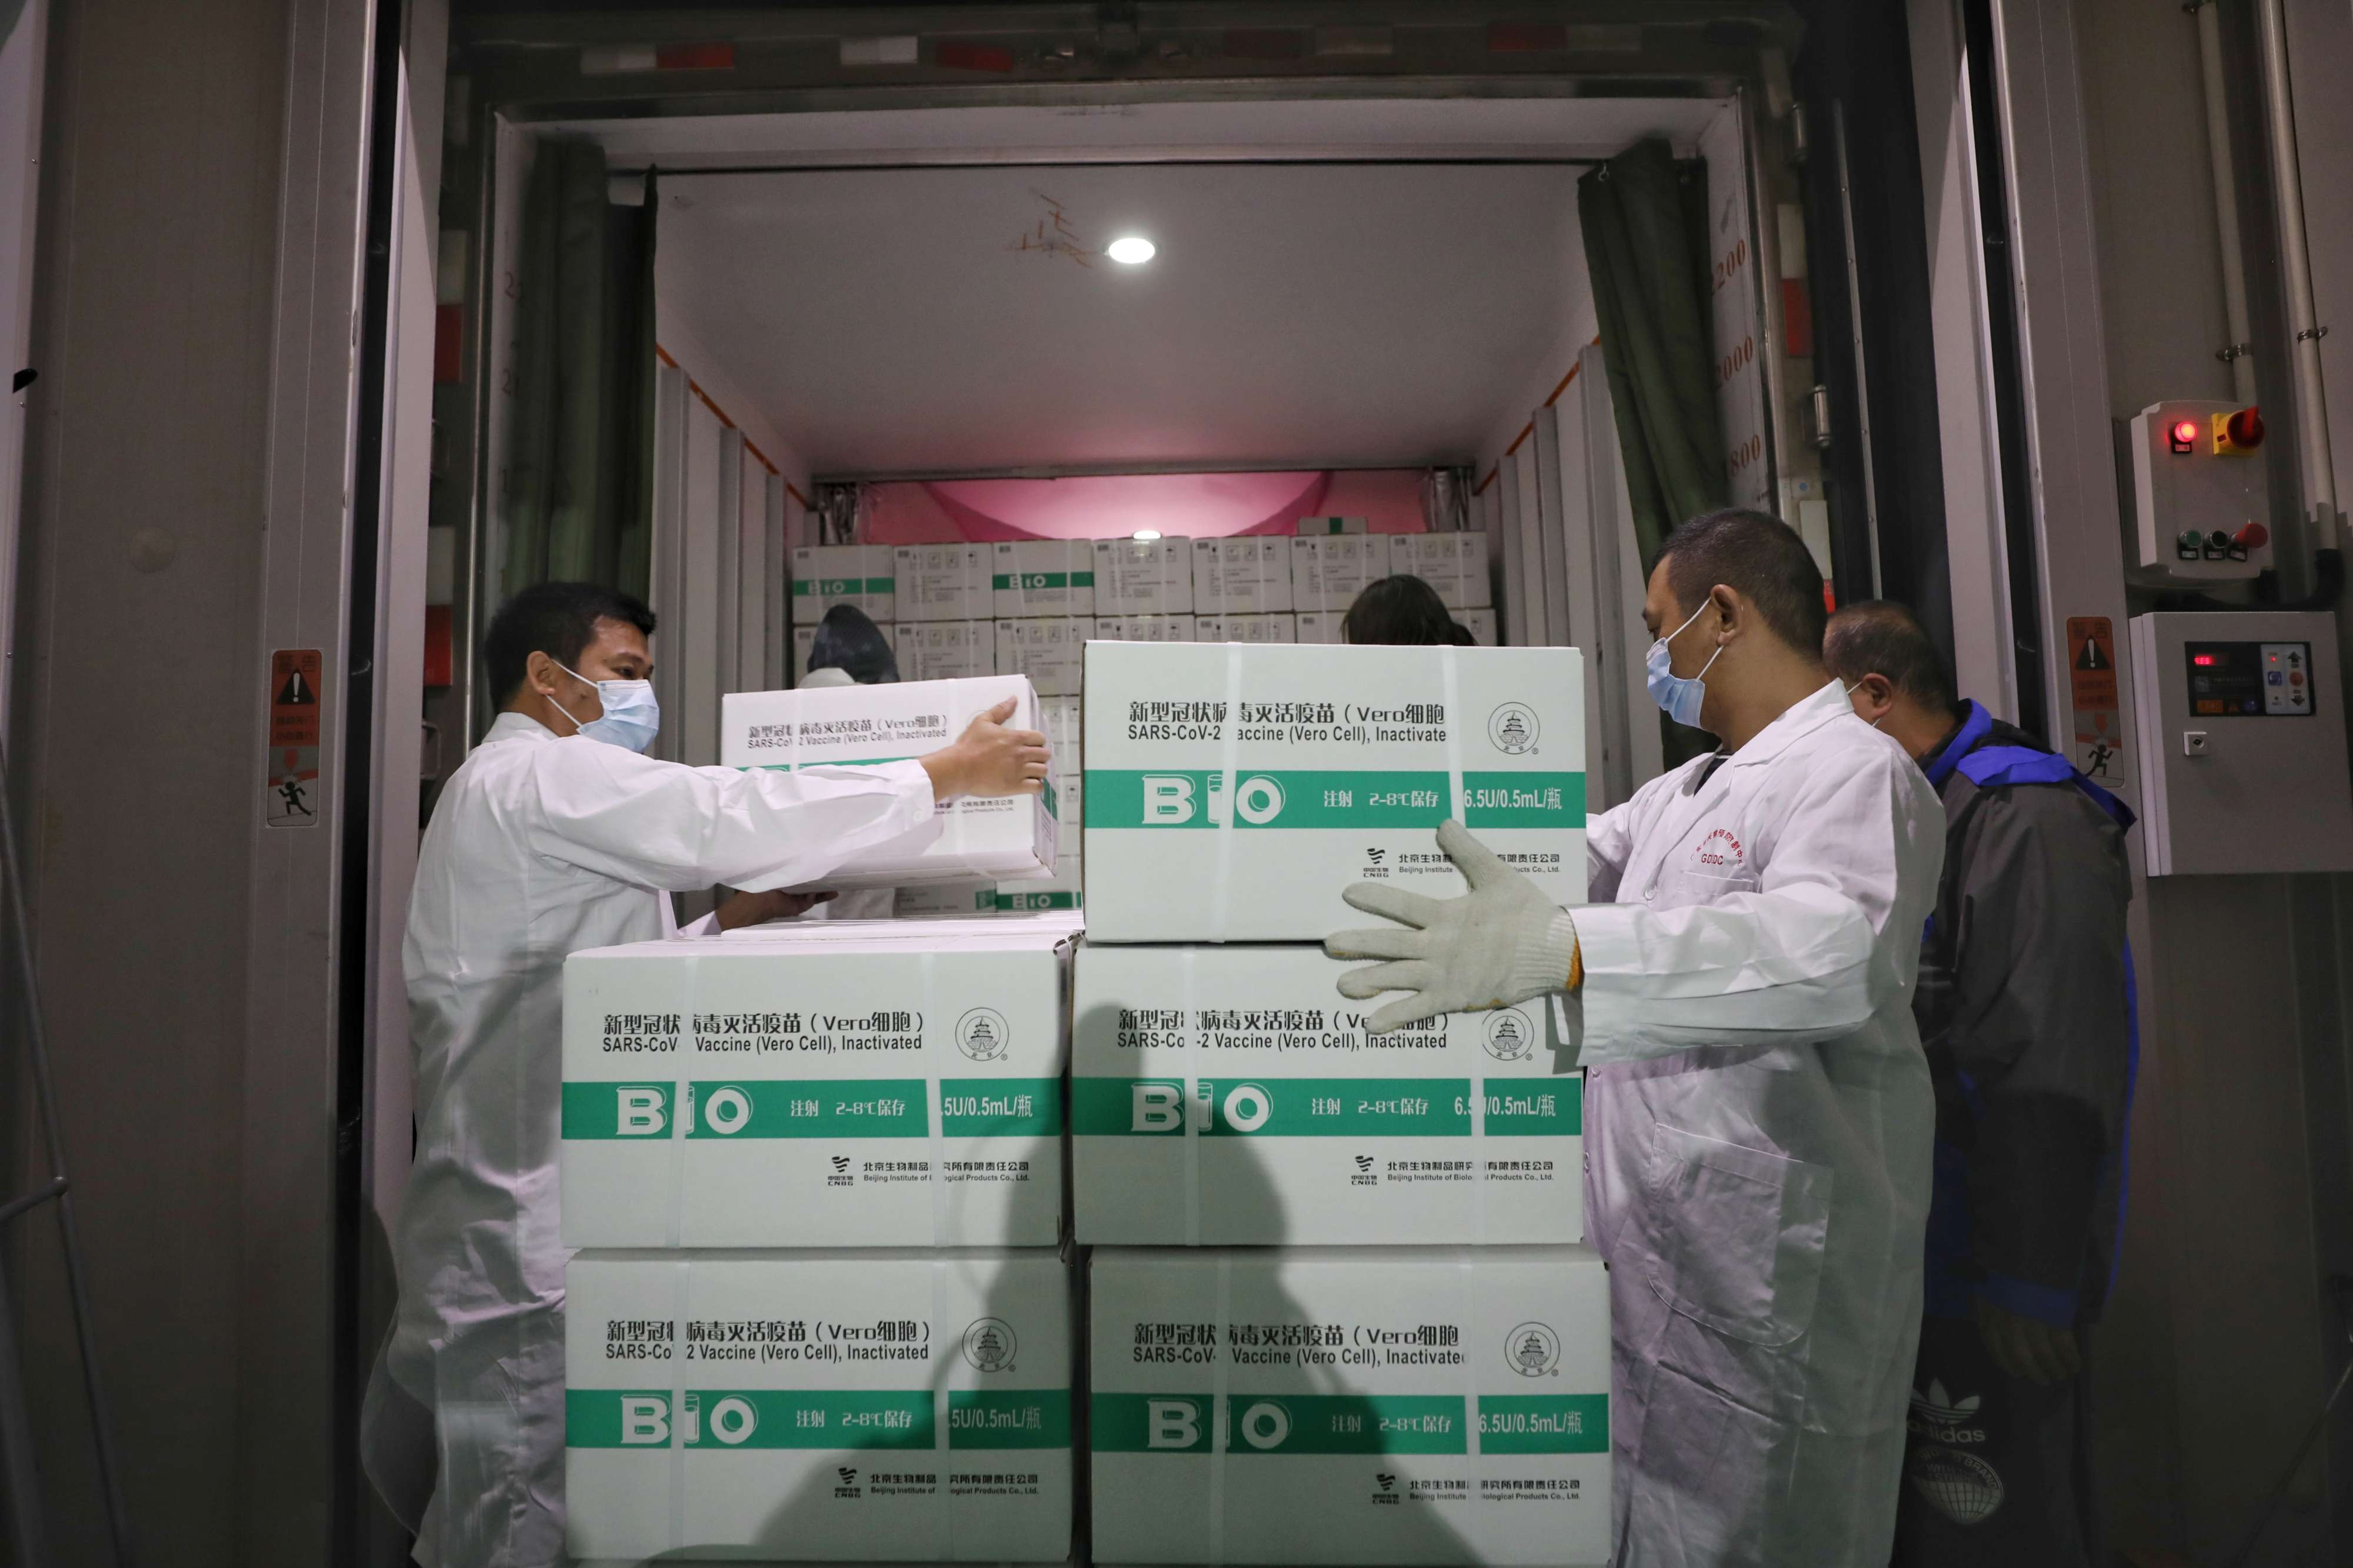 اللقاحات الصينية تتطلب ضوابط أقل صرامة عند تخزينها